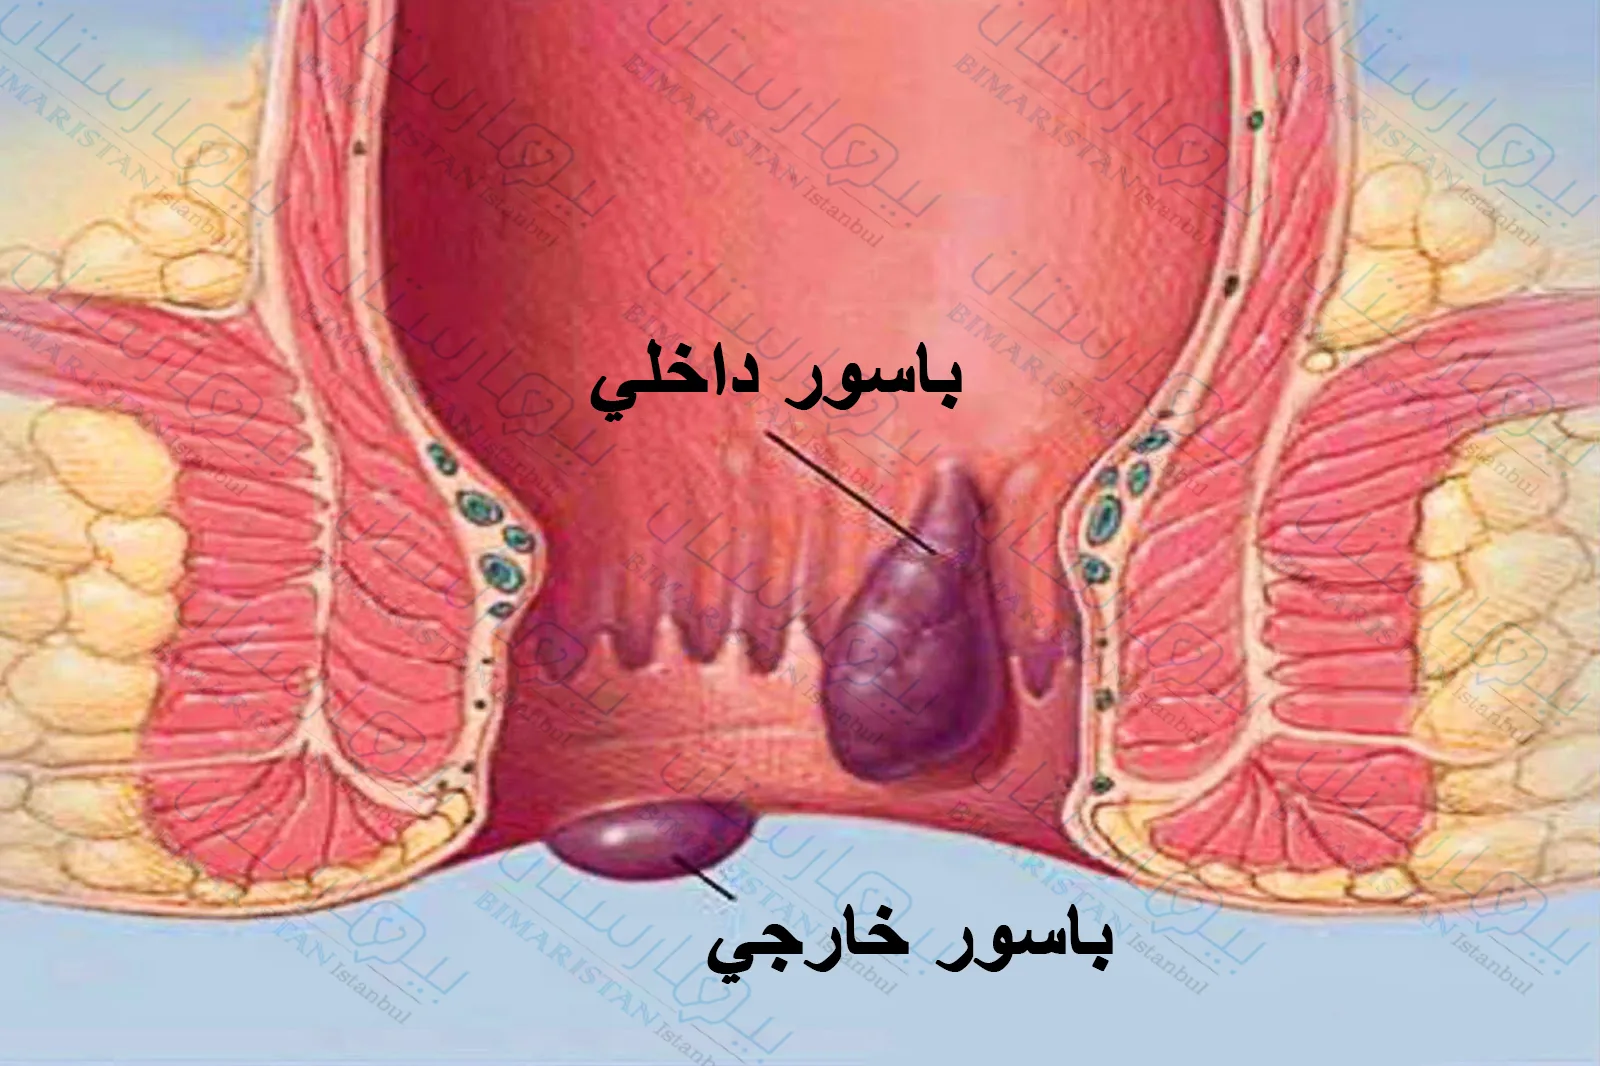 Dış hemoroidler anüsün yakınında oluşurken, iç hemoroidler rektum içinde anal uca doğru oluşur.